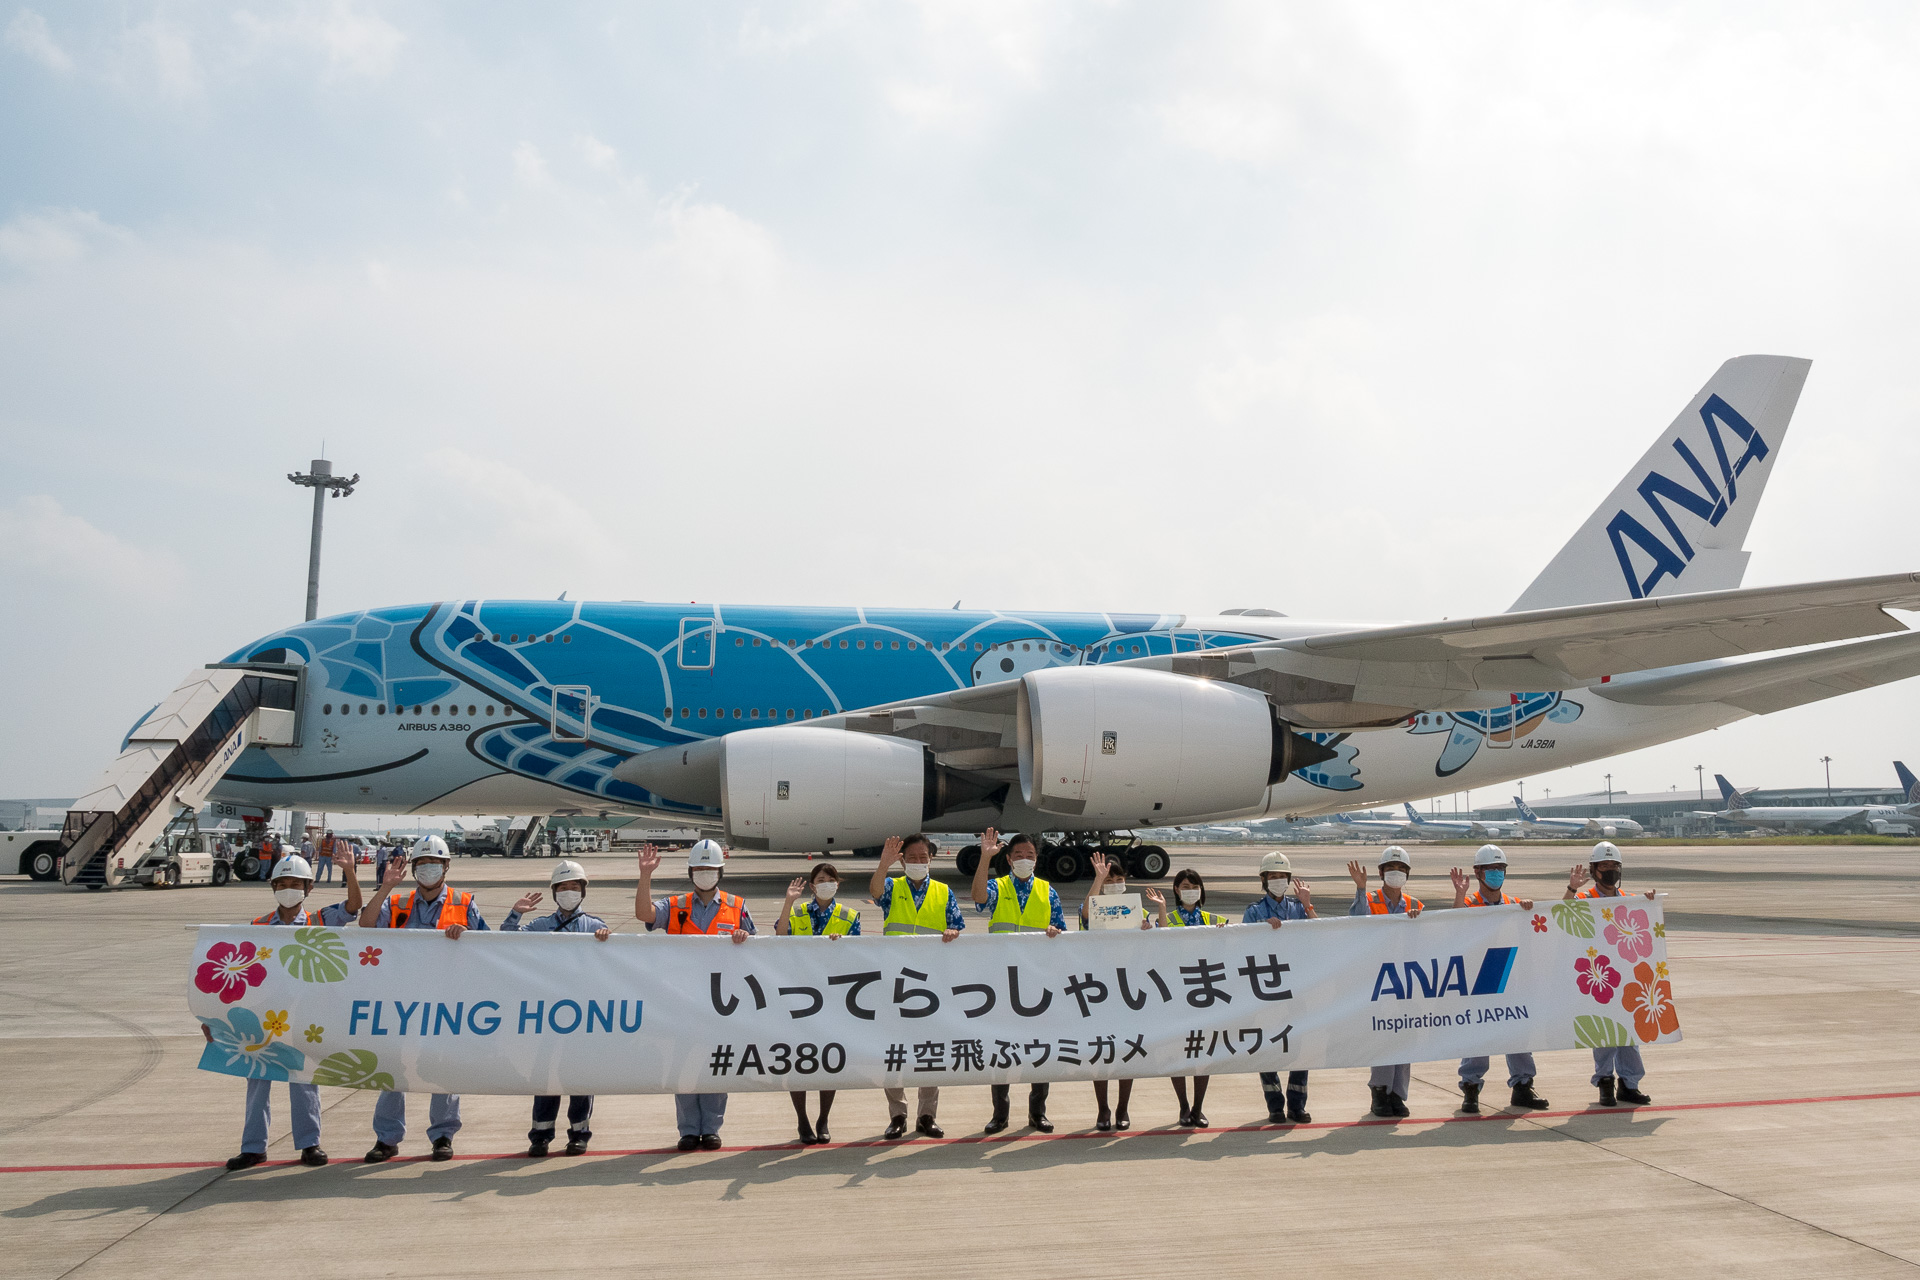 ANA、エアバス A380型機「FLYING HONU」による遊覧飛行実施。定員の約150倍が応募した激レアフライトに - トラベル Watch